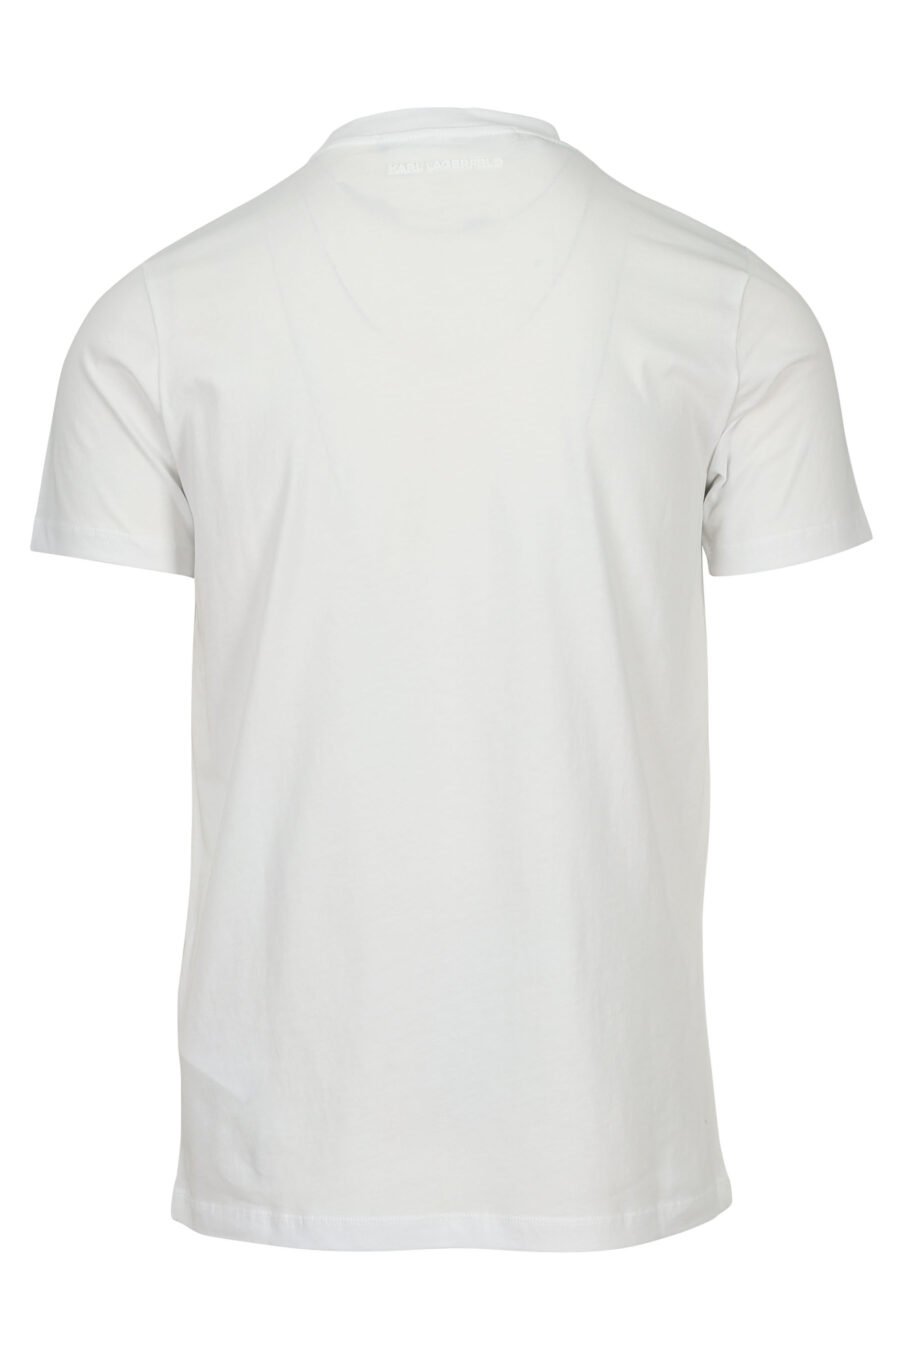 Camiseta blanca con maxilogo "rue st guillaume" en relieve - 4062226963244 1